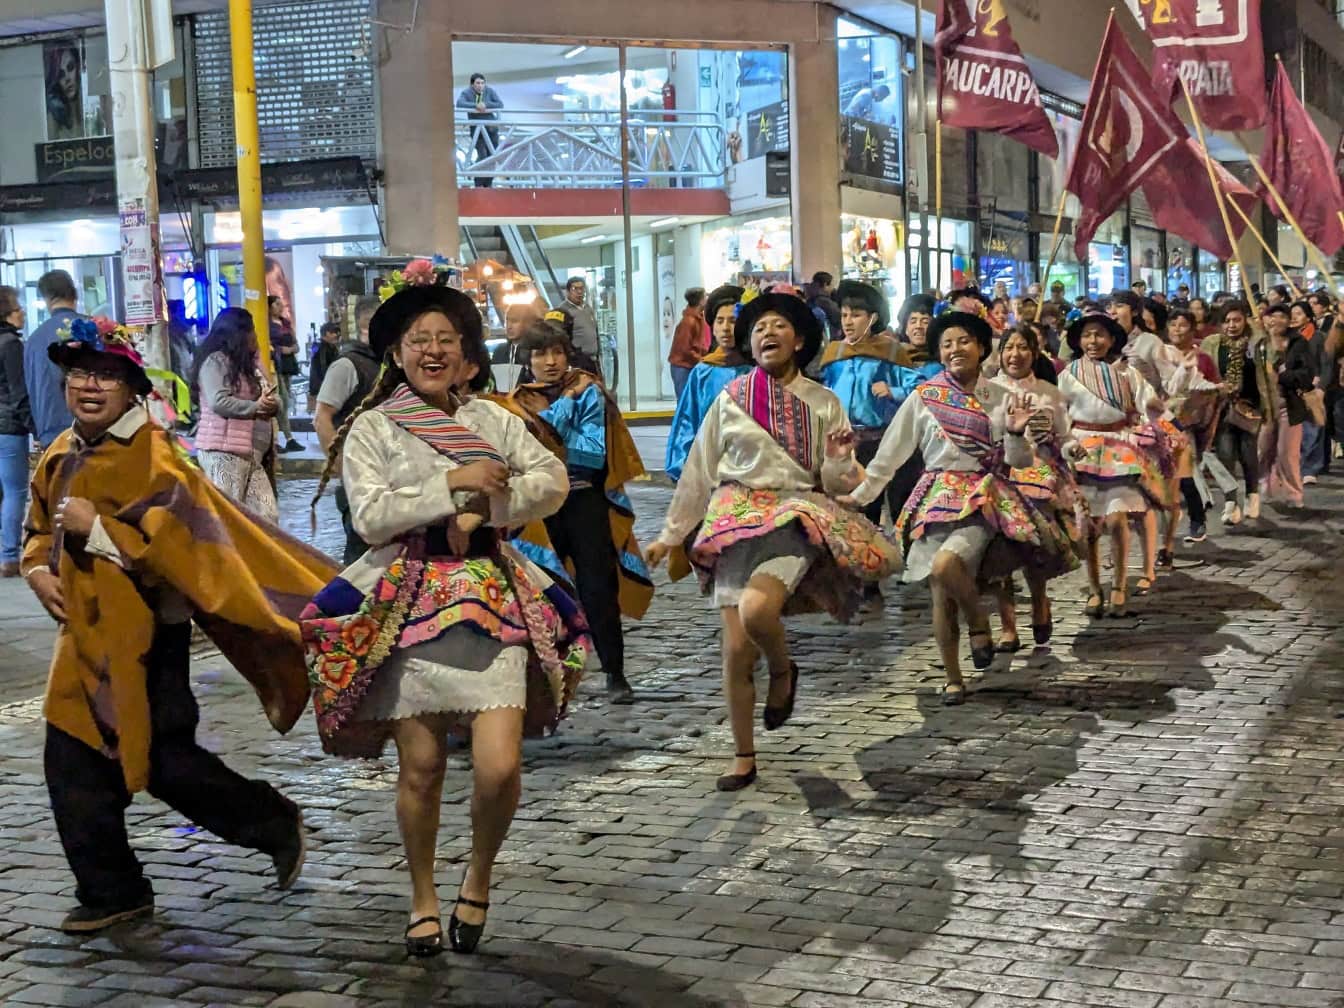 Ľudia v tradičnom peruánskom ľudovom odeve tancujú na ulici počas pouličného festivalu